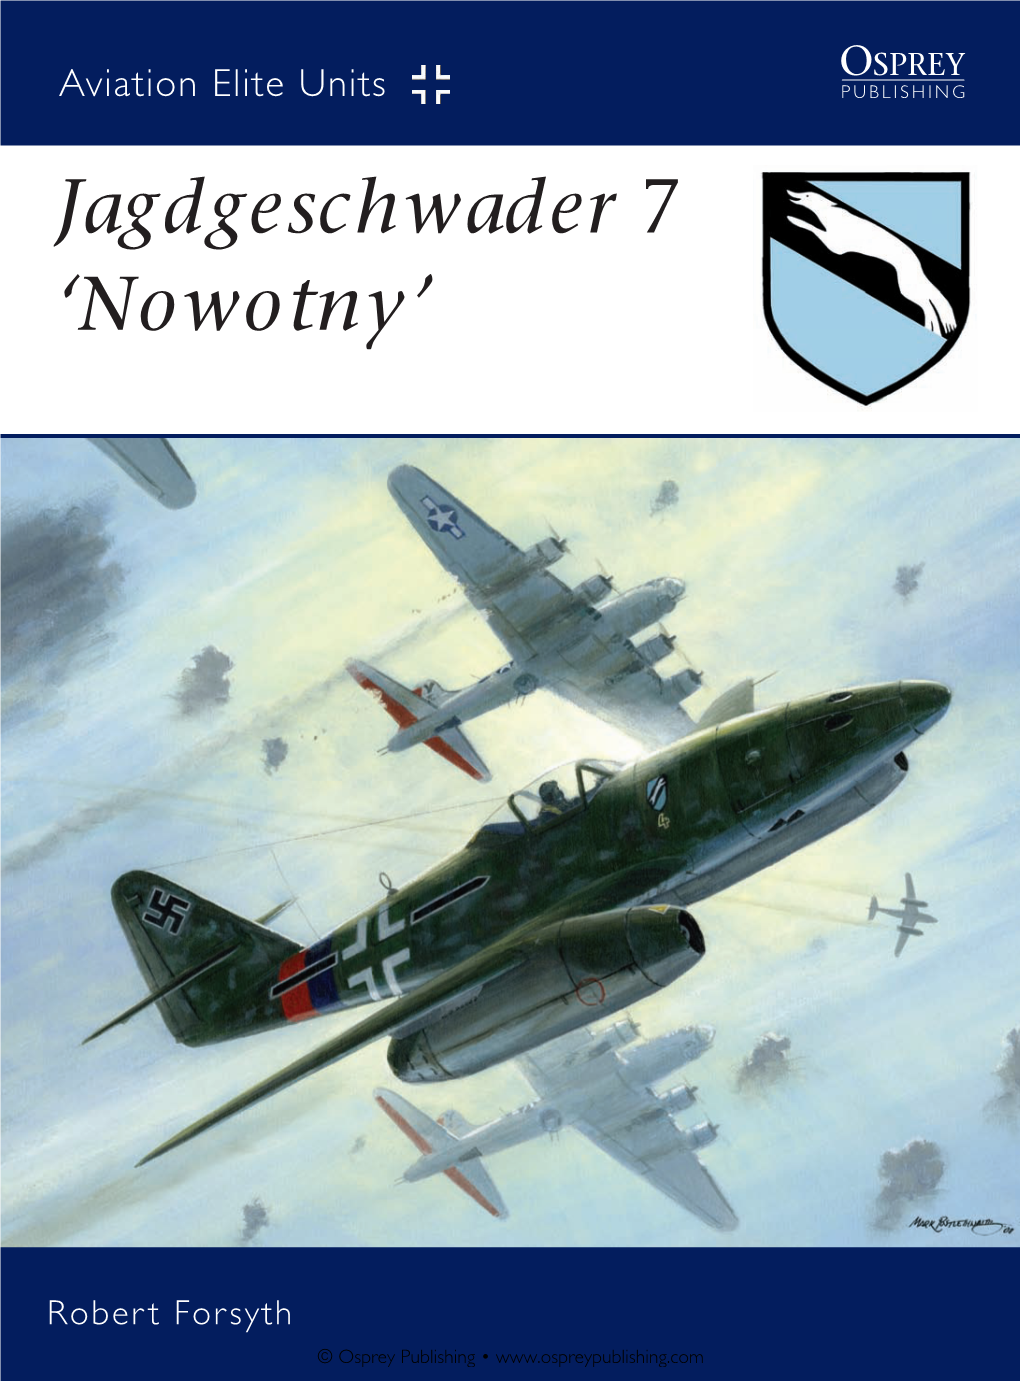 Osprey Publishing • Aviation Elite Units Elite Aviation Jagdgeschwader ‘Nowotny’ Robert Forsyth